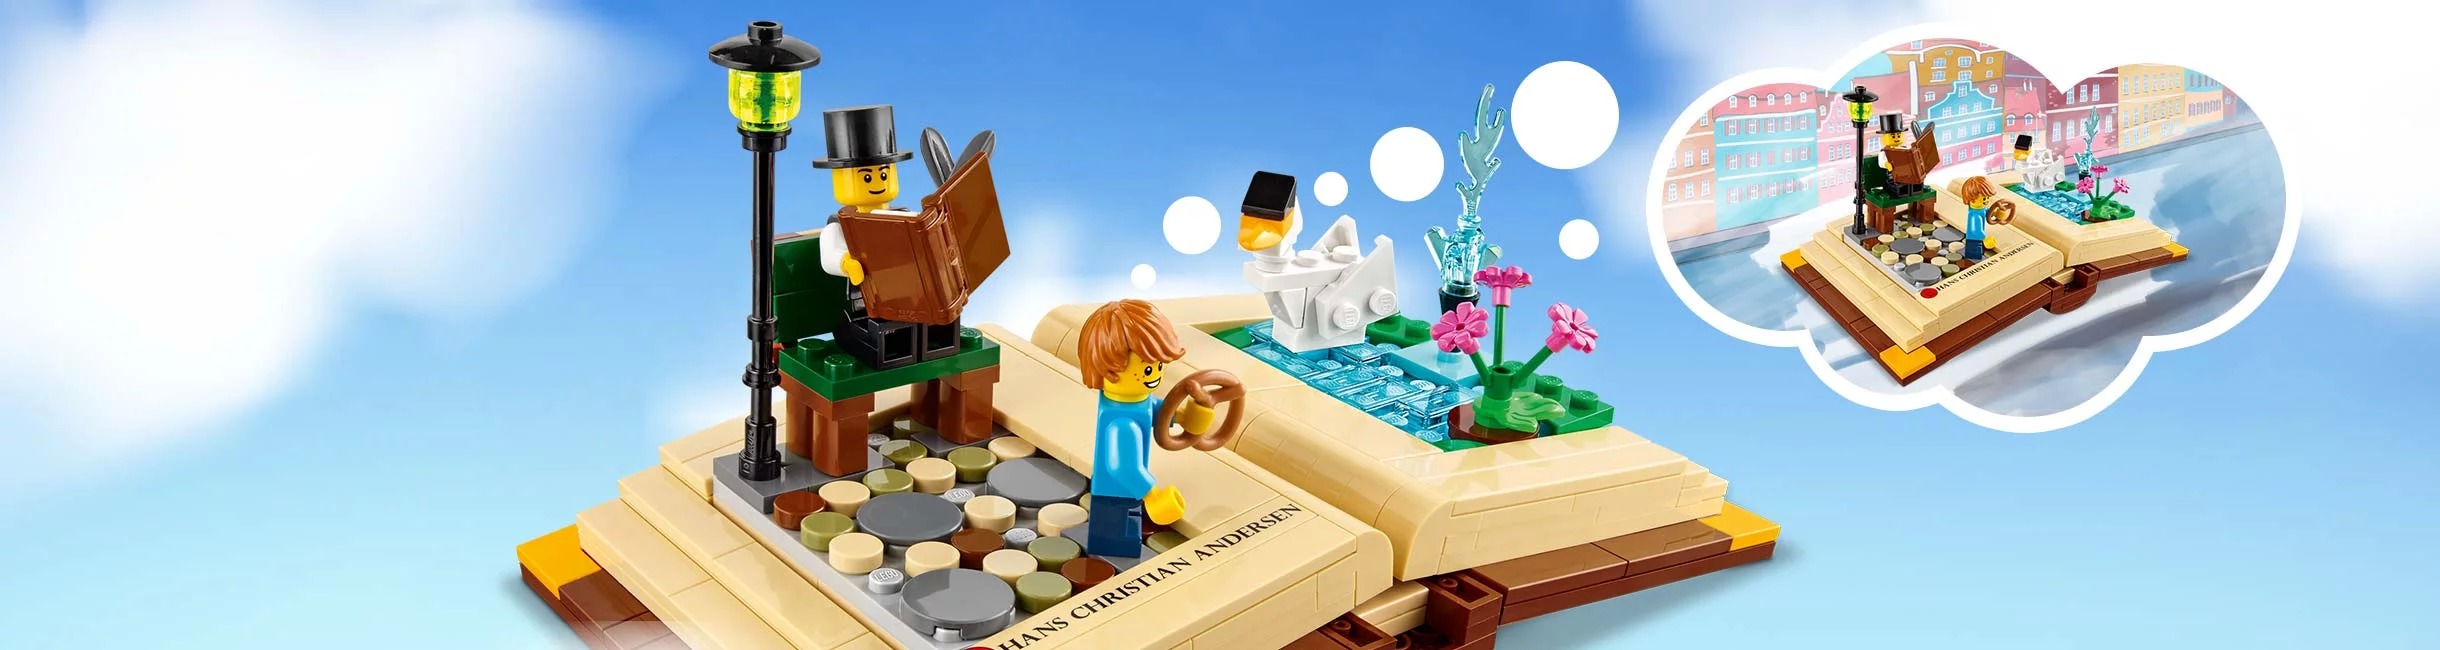 Рекламная акция Лего (LEGO) «Это не сказка! Это книга сказок!»